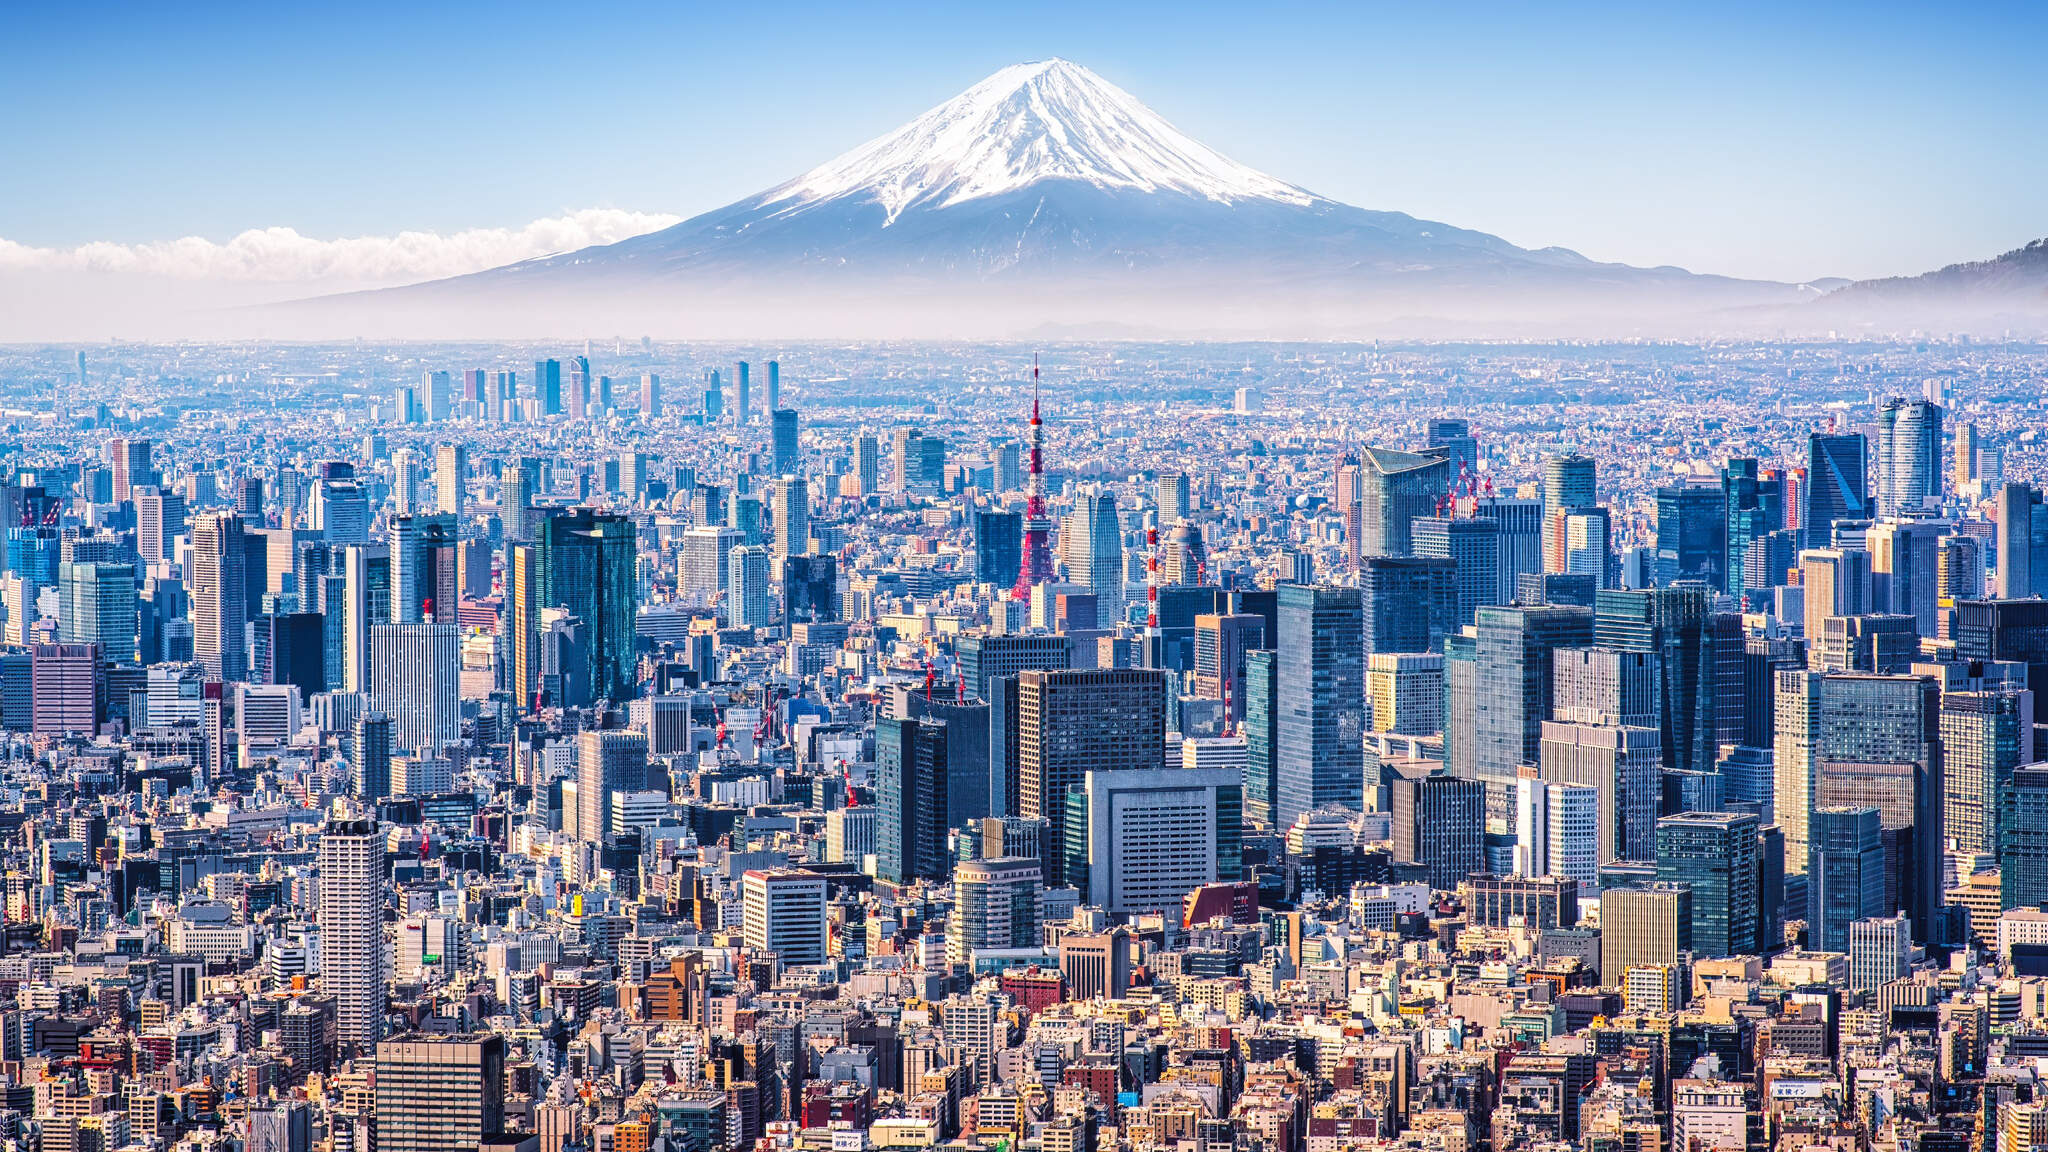 Tokio, talousmetropoli Fuji-vuoren juurella.